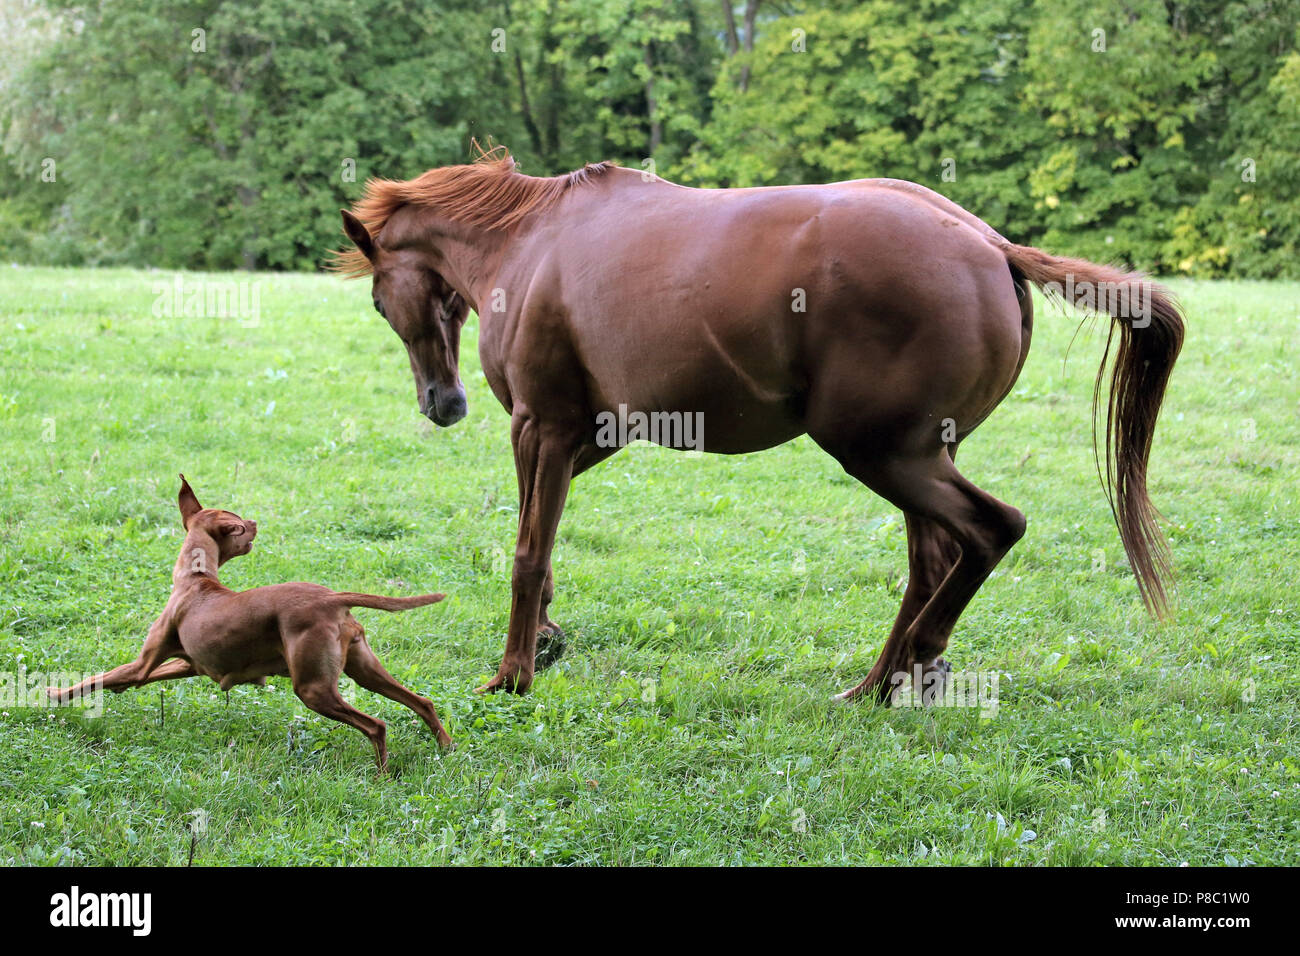 Geste Westerberg, cheval et chien jouent ensemble dans le pâturage Banque D'Images